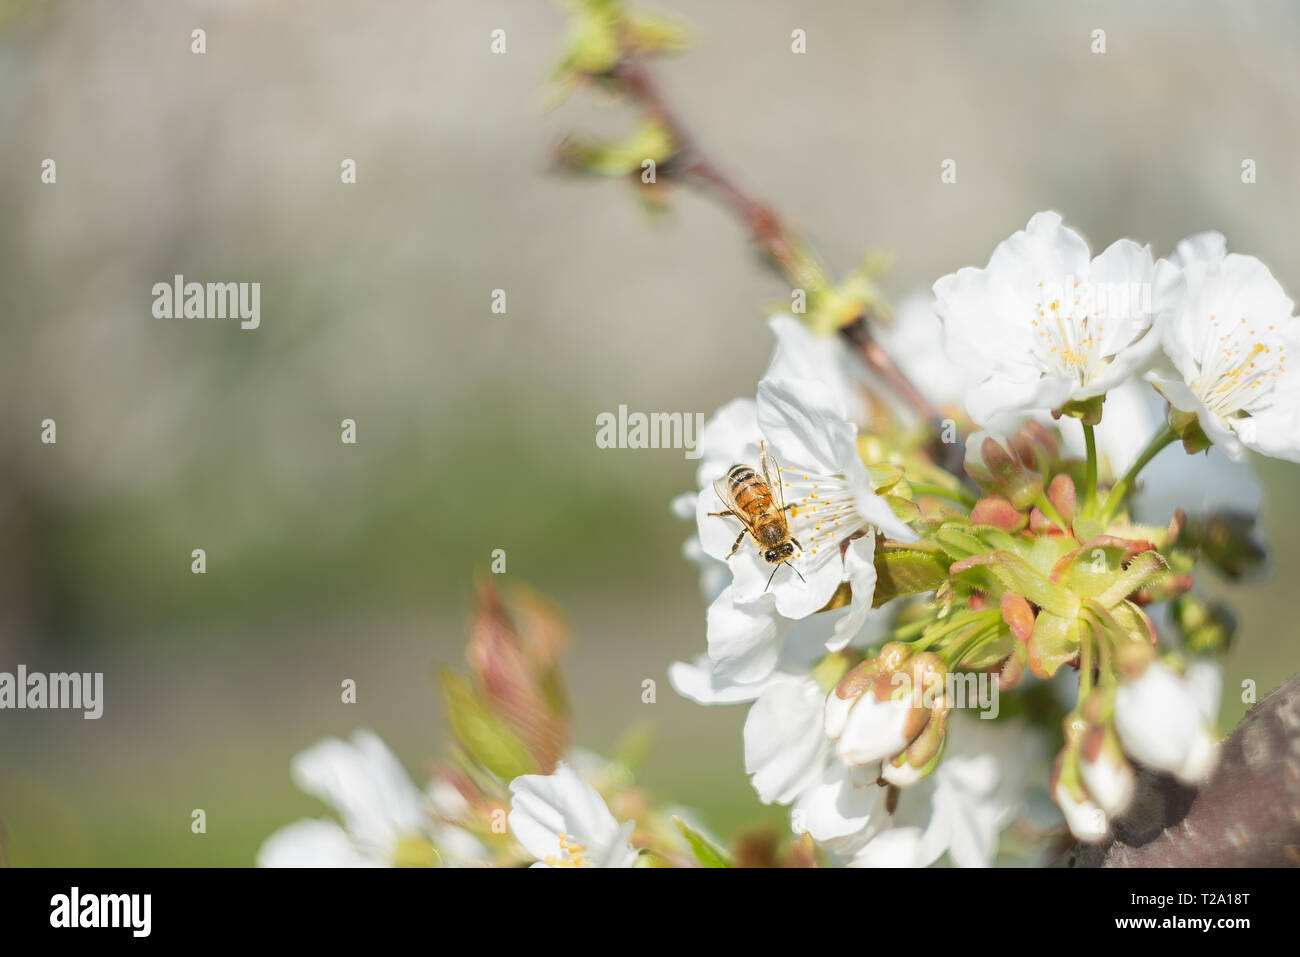 Biene auf weißen Blumen der einen Kirschbaum, Makro Bild von Natur mit Vintage Optik, hellen Hintergrund genommen und angenehm verschwommen Stockfoto